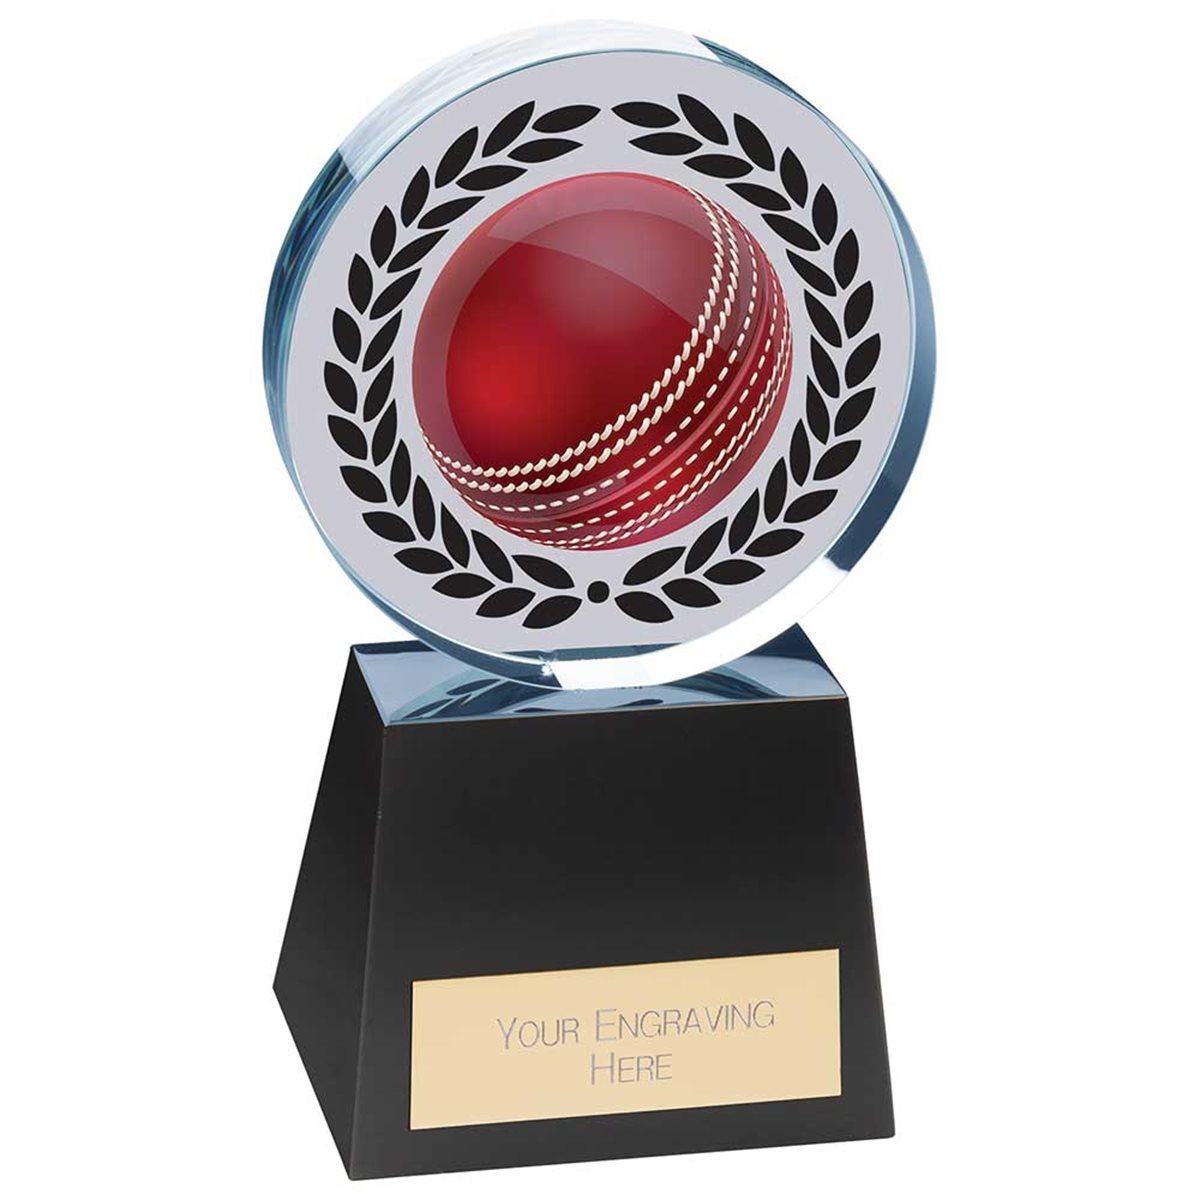 Emperor Cricket Glass Award CR24343